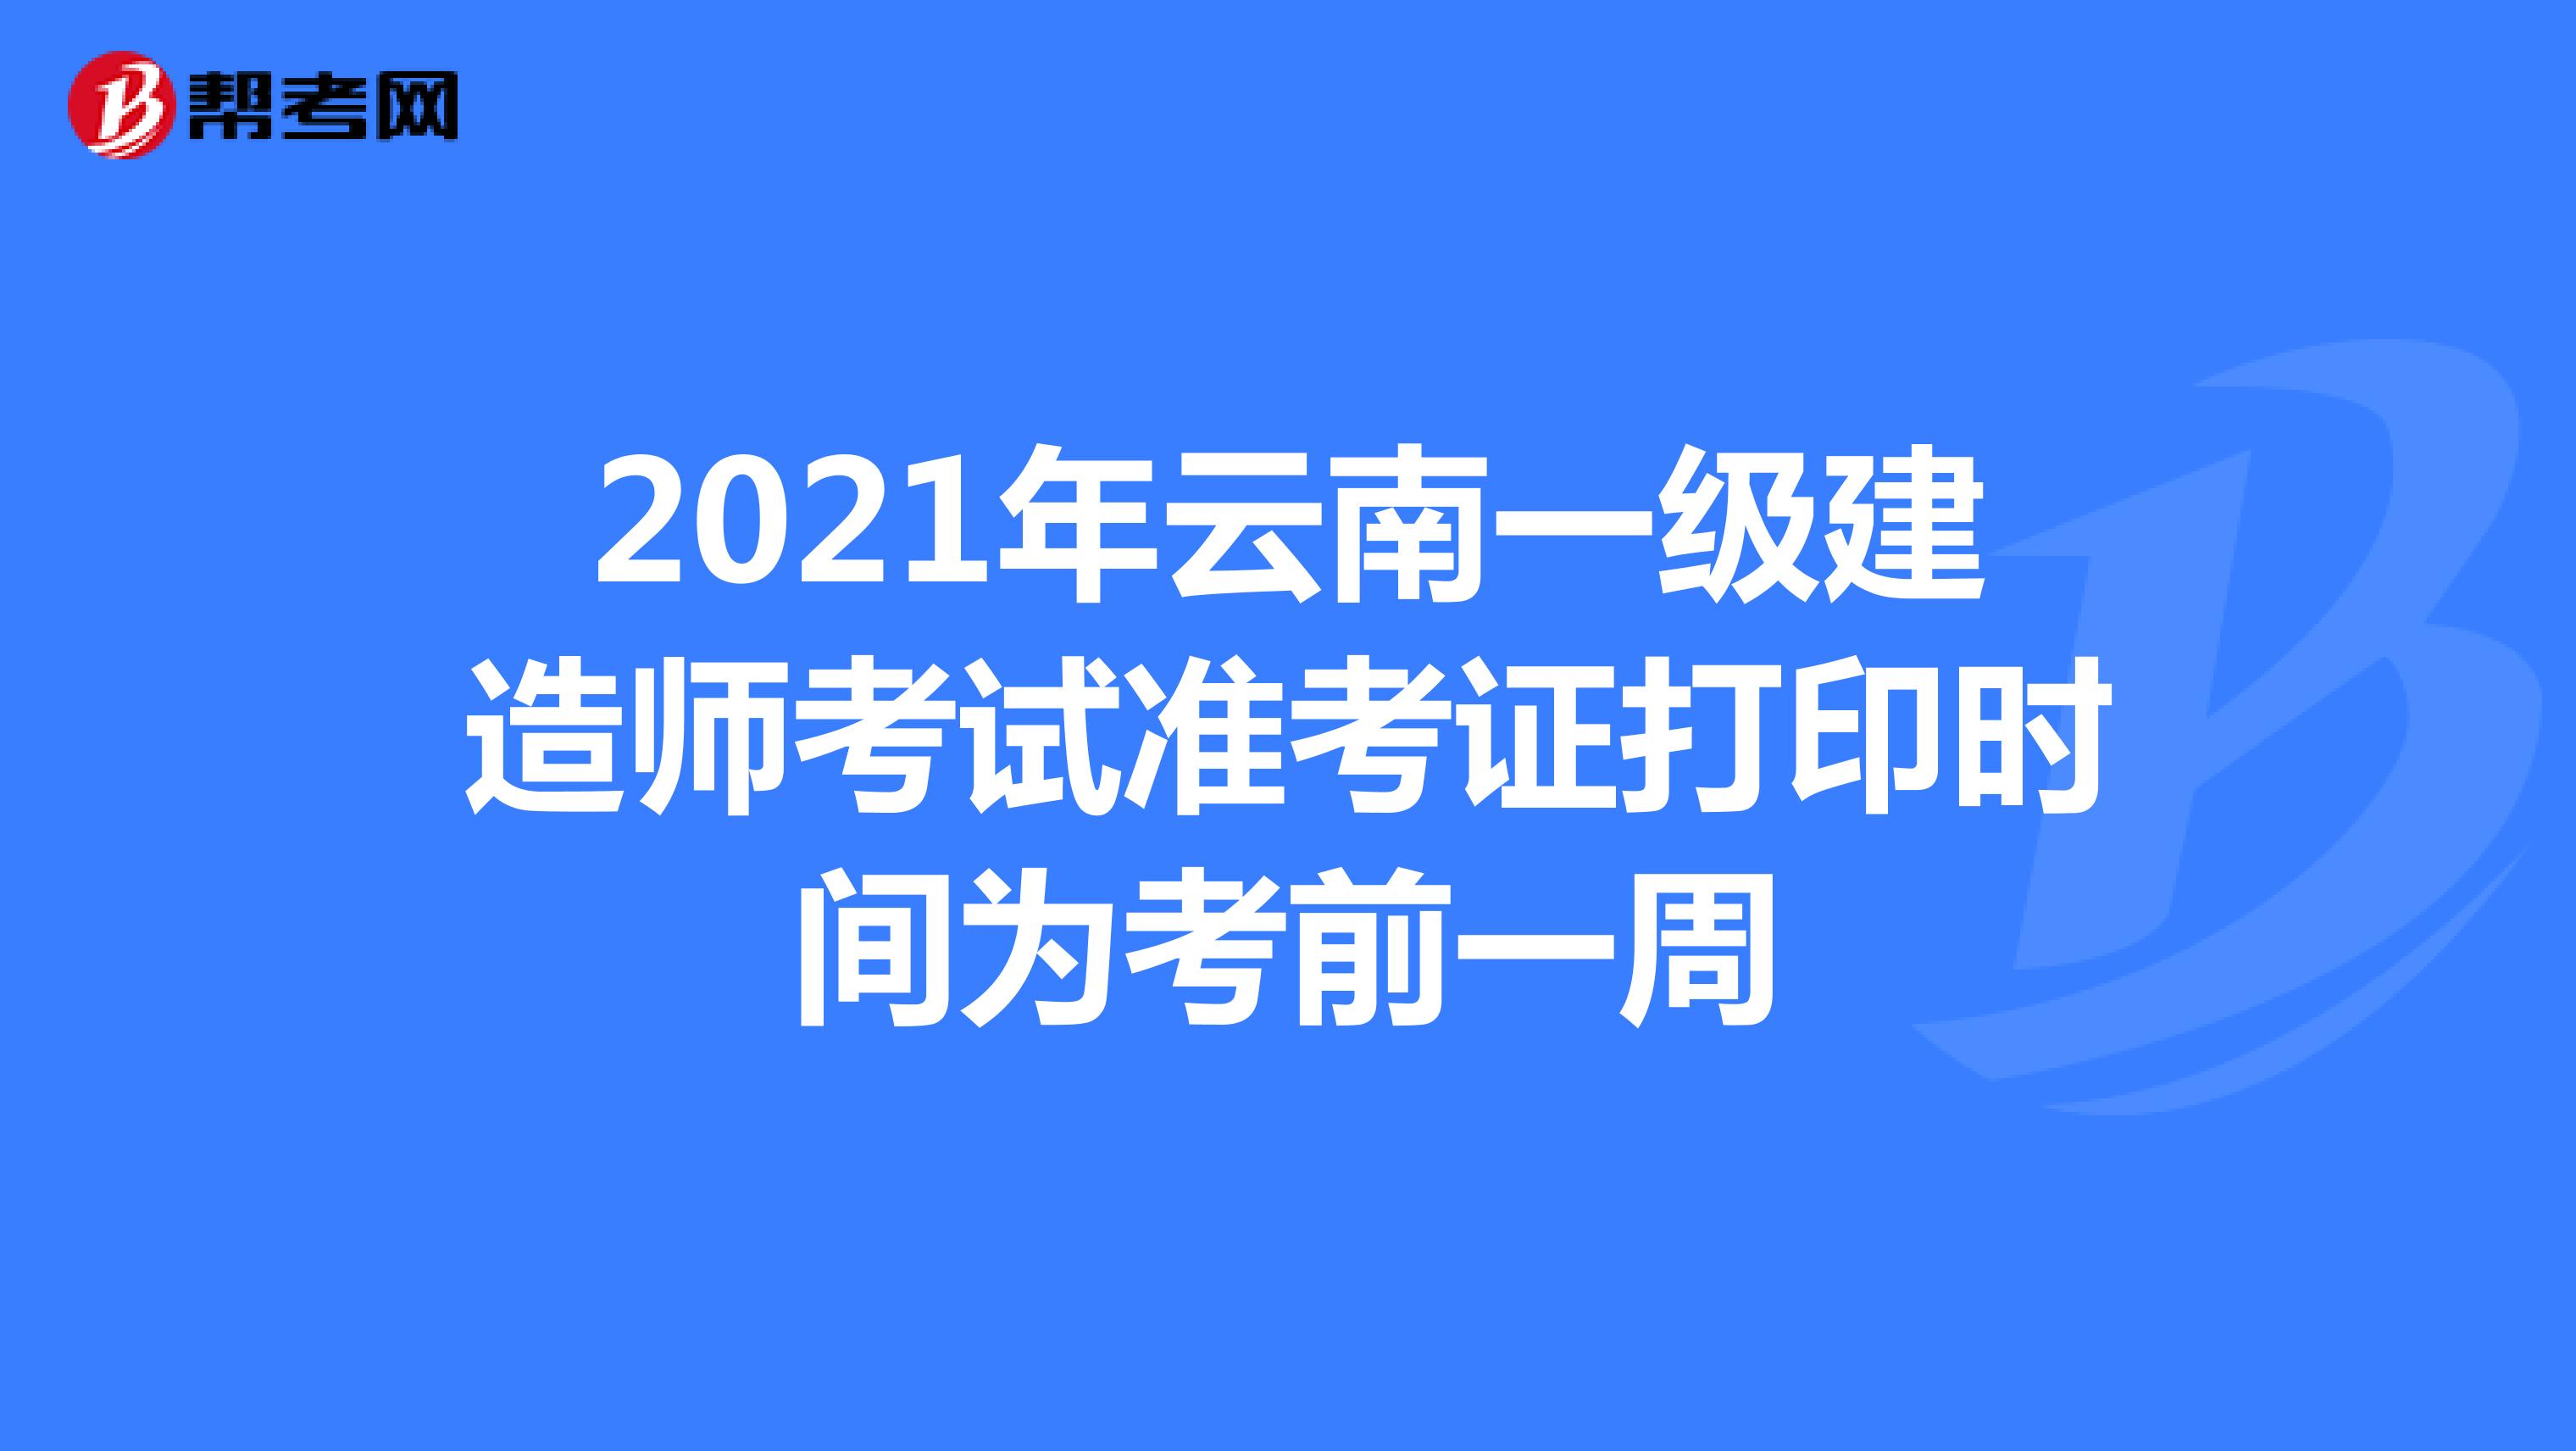 2021年云南一级建造师考试准考证打印时间为考前一周